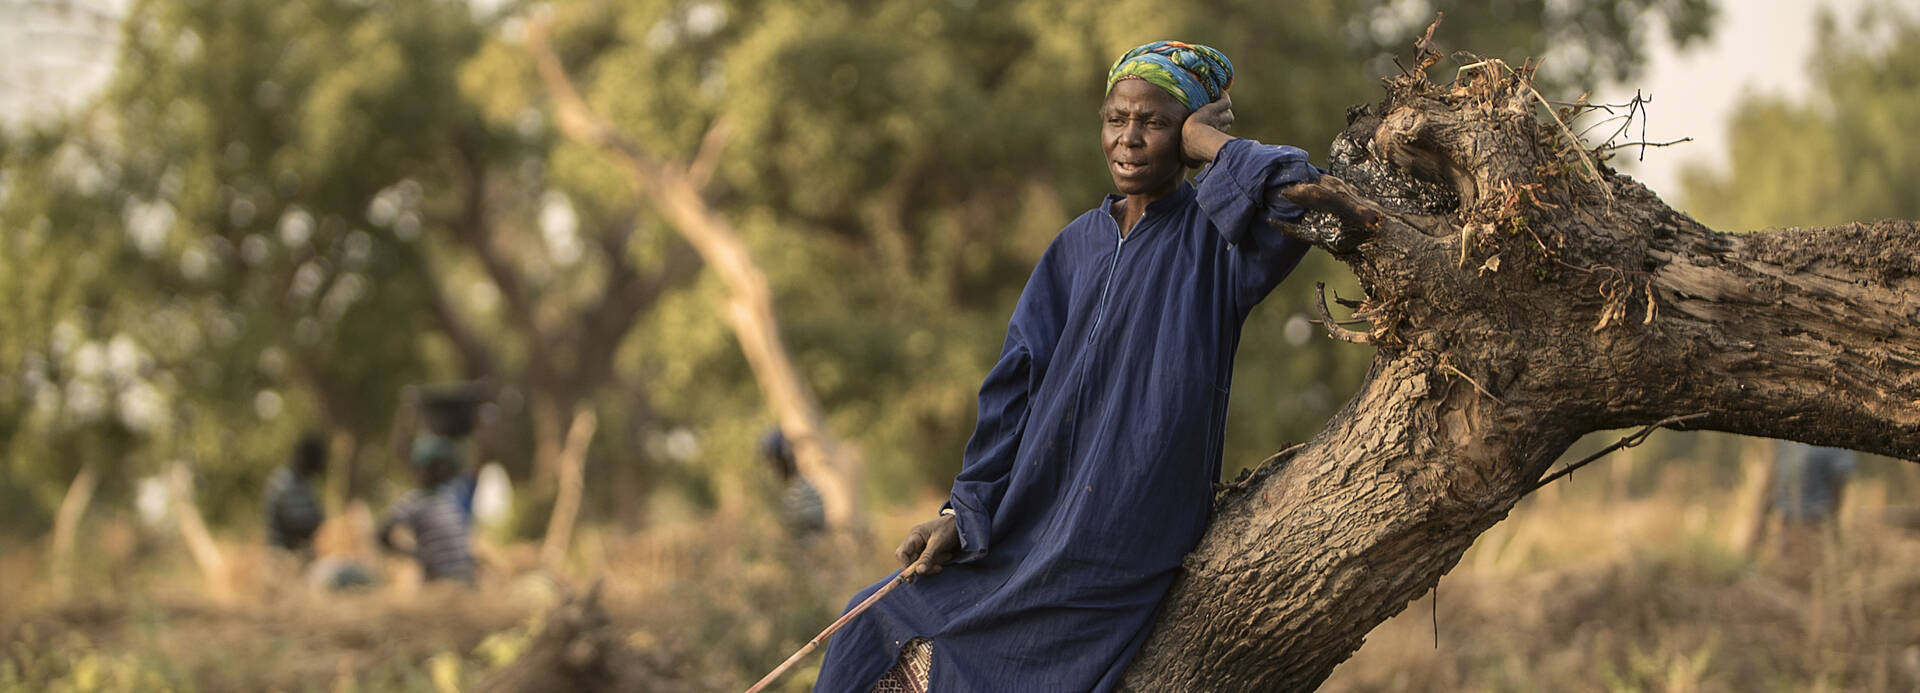 Frau in Burkina Faso leht sich an einen Baum.